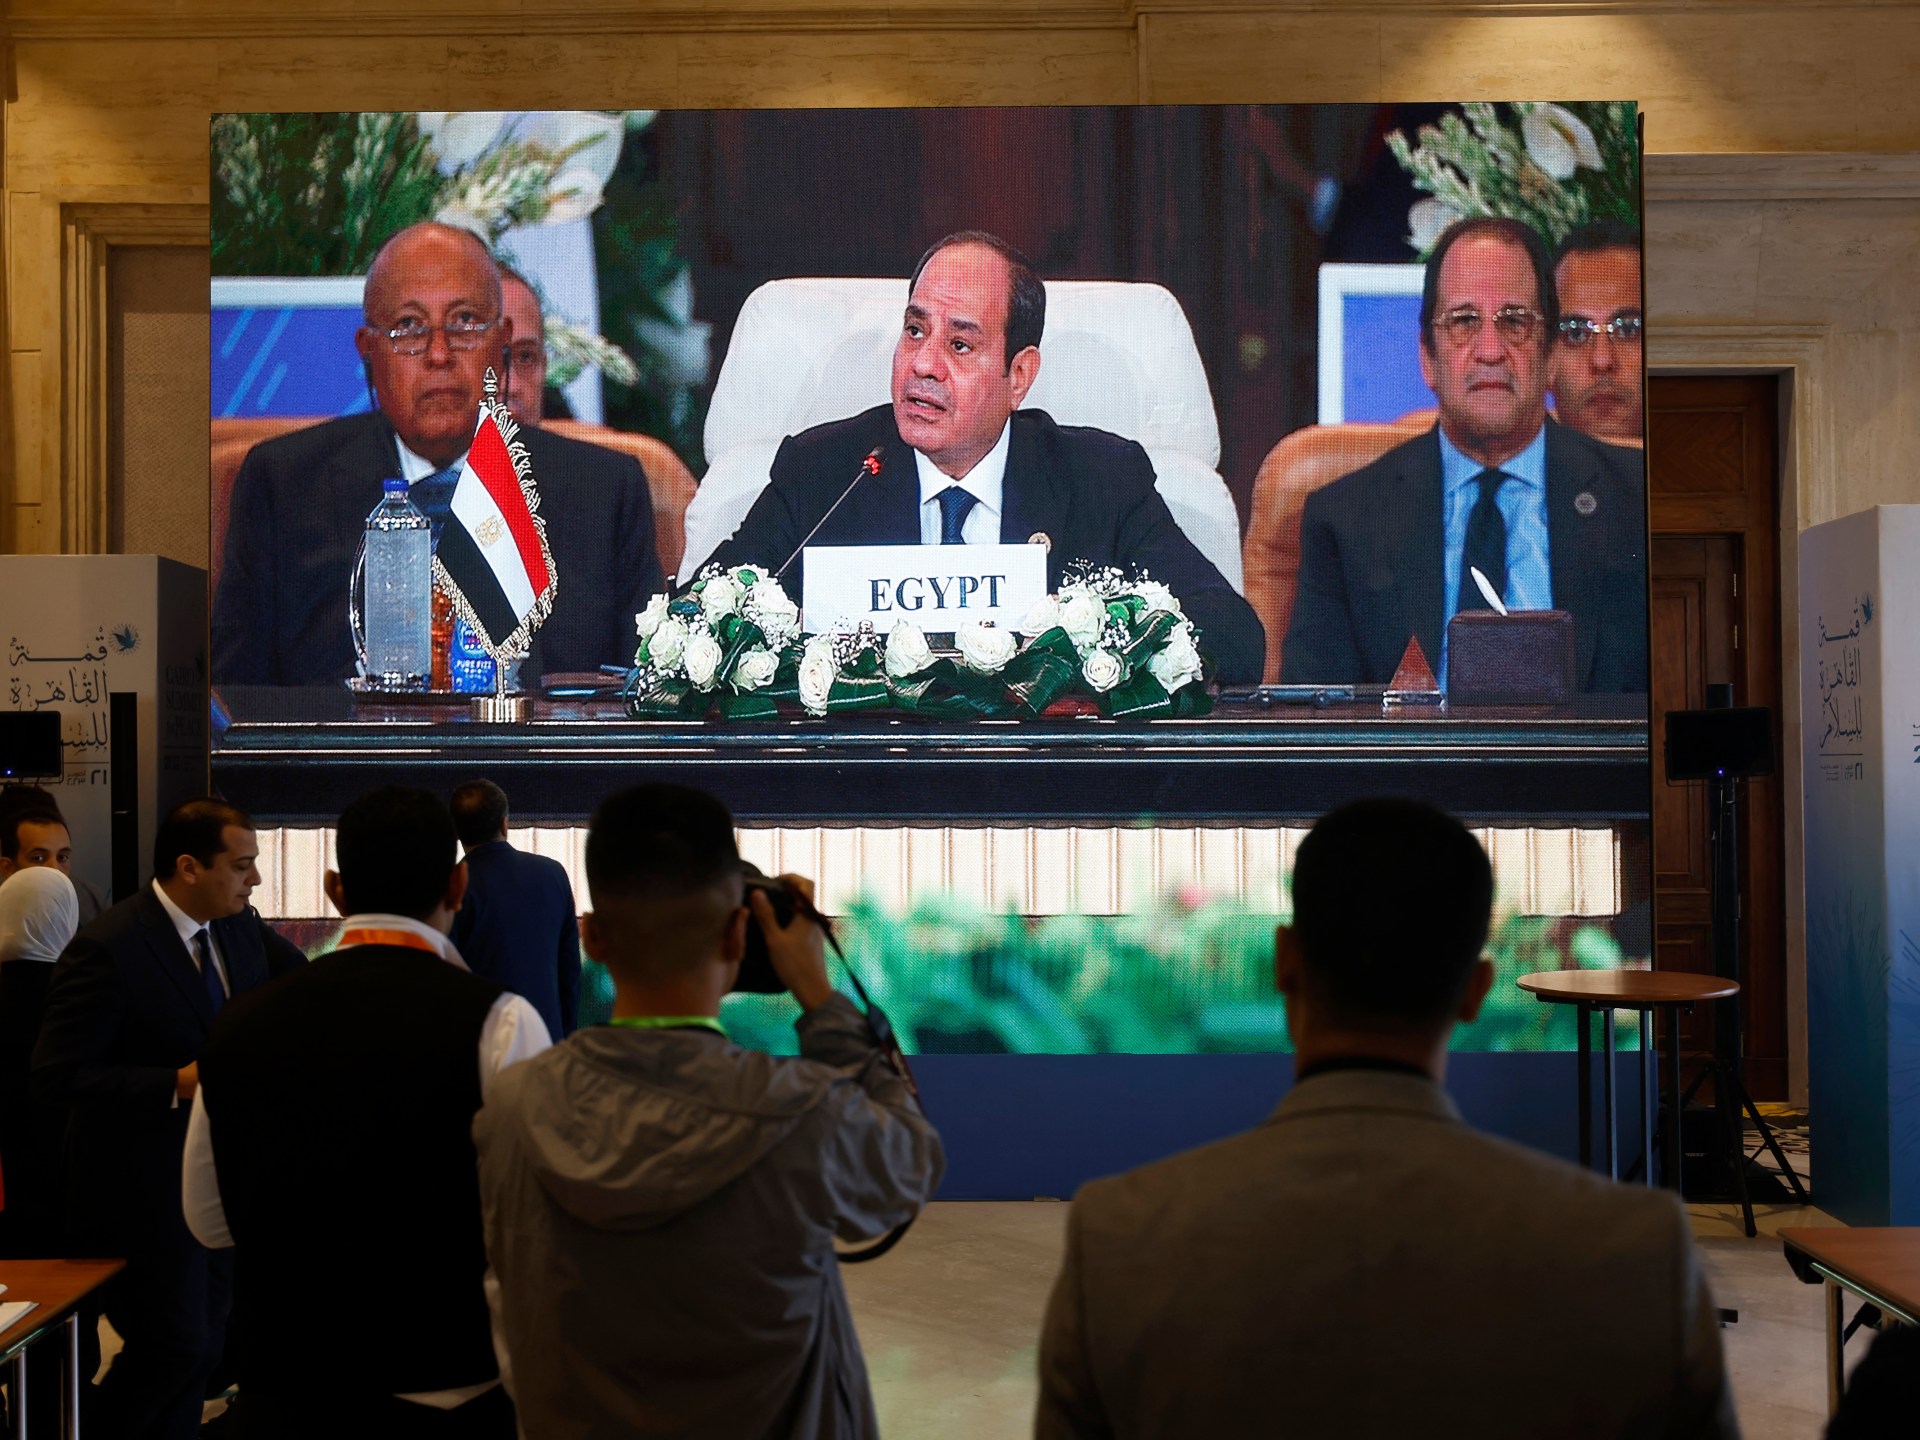 “قمّة القاهرة للسلام” ومواقف الأطراف من “طوفان الأقصى” | آراء – البوكس نيوز